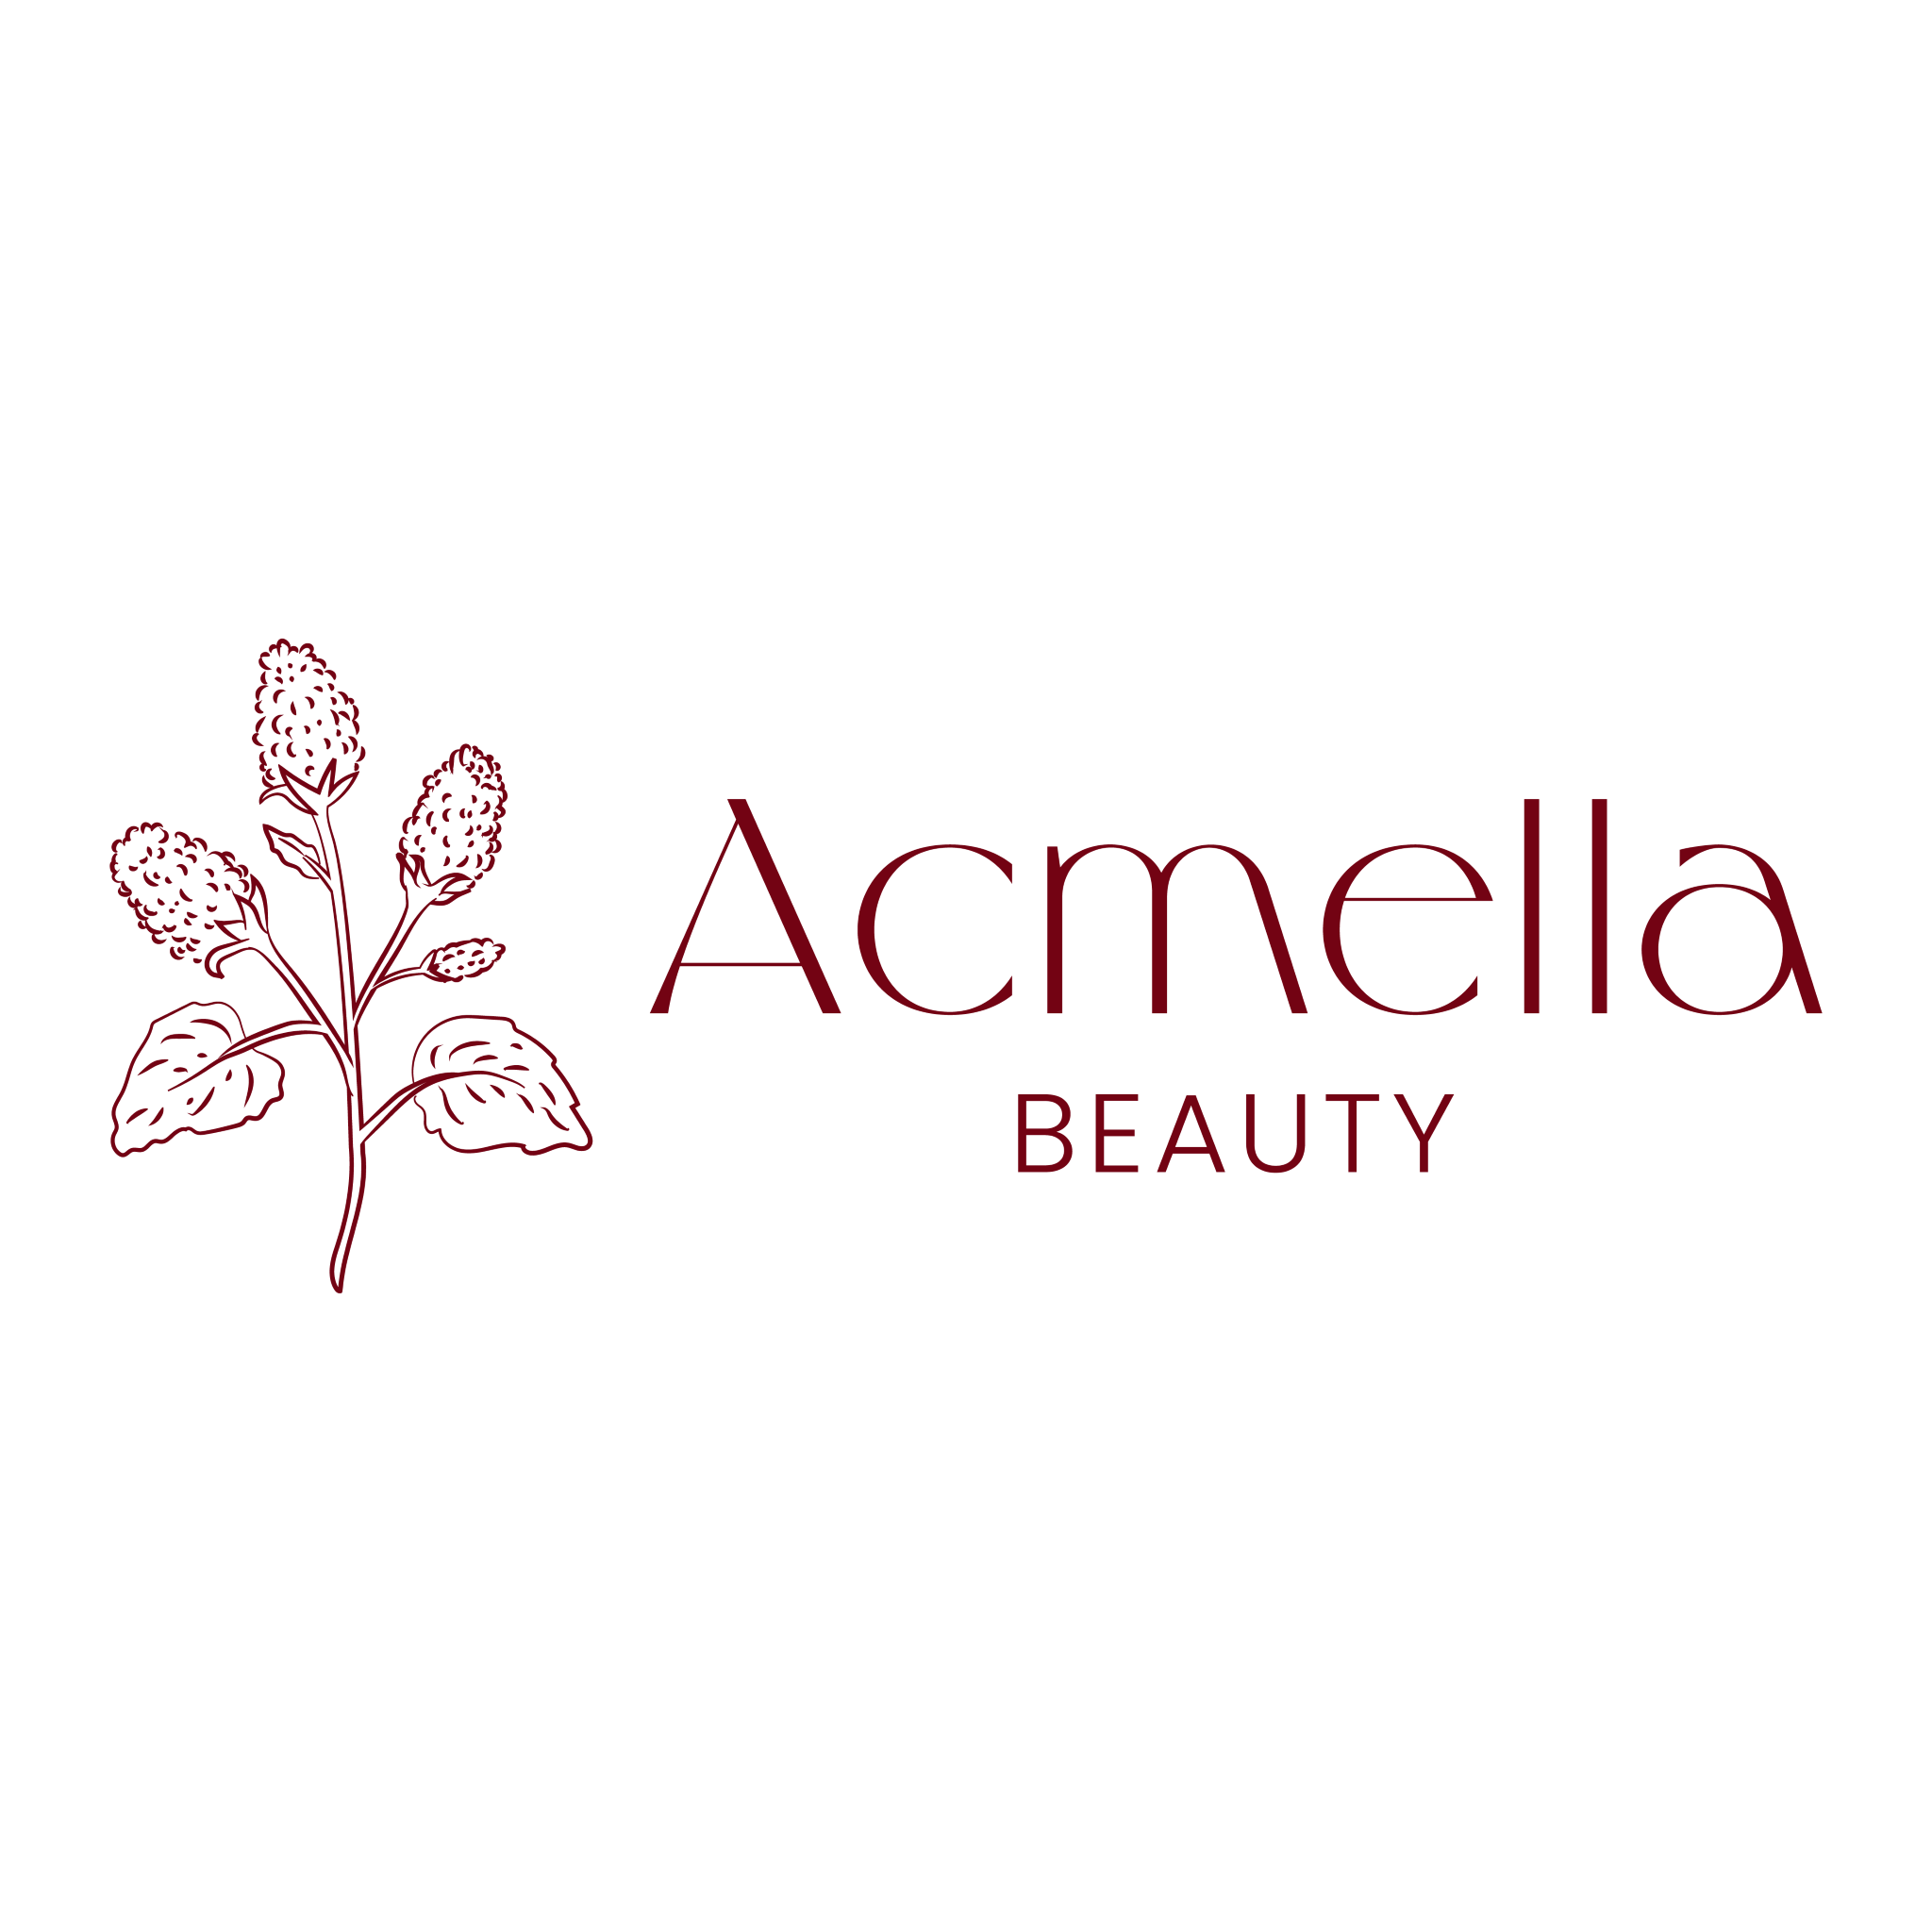 Acmella Beauty